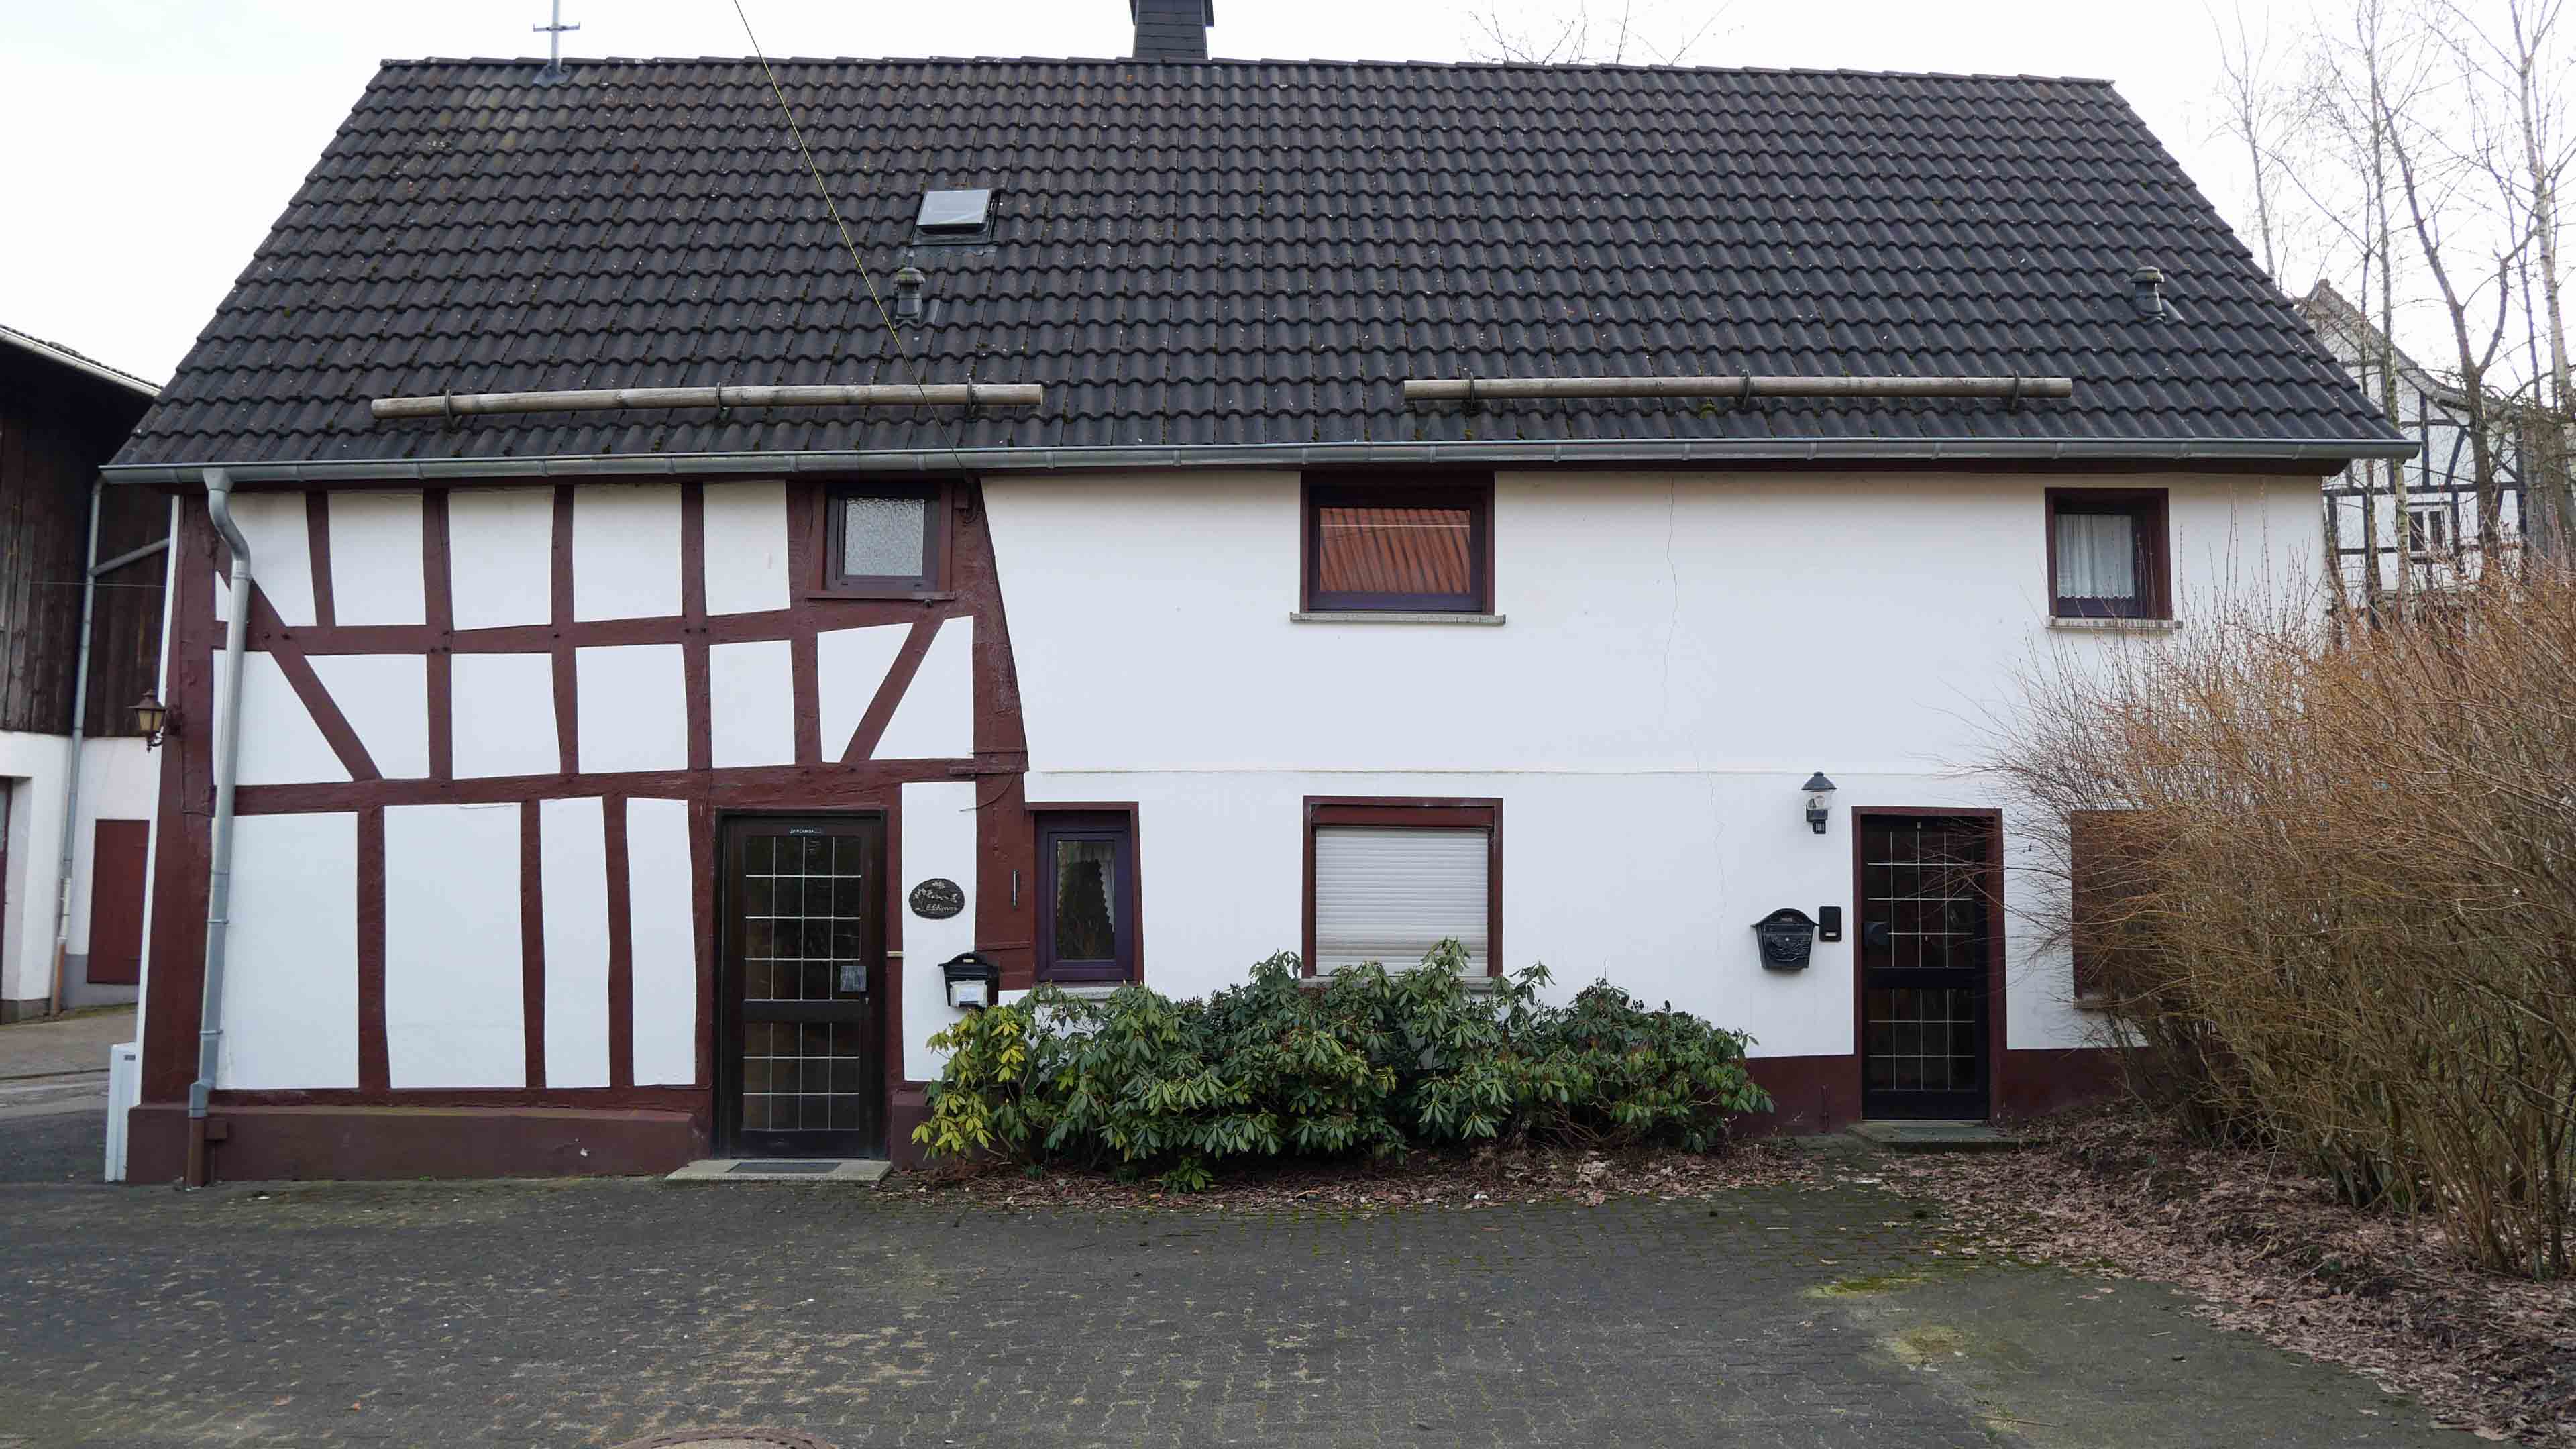 Reichshof-Wildberg: Preiswertes Wohnen im Fachwerkhaus, Front-/Hofseite mit zwei Hauseingängen